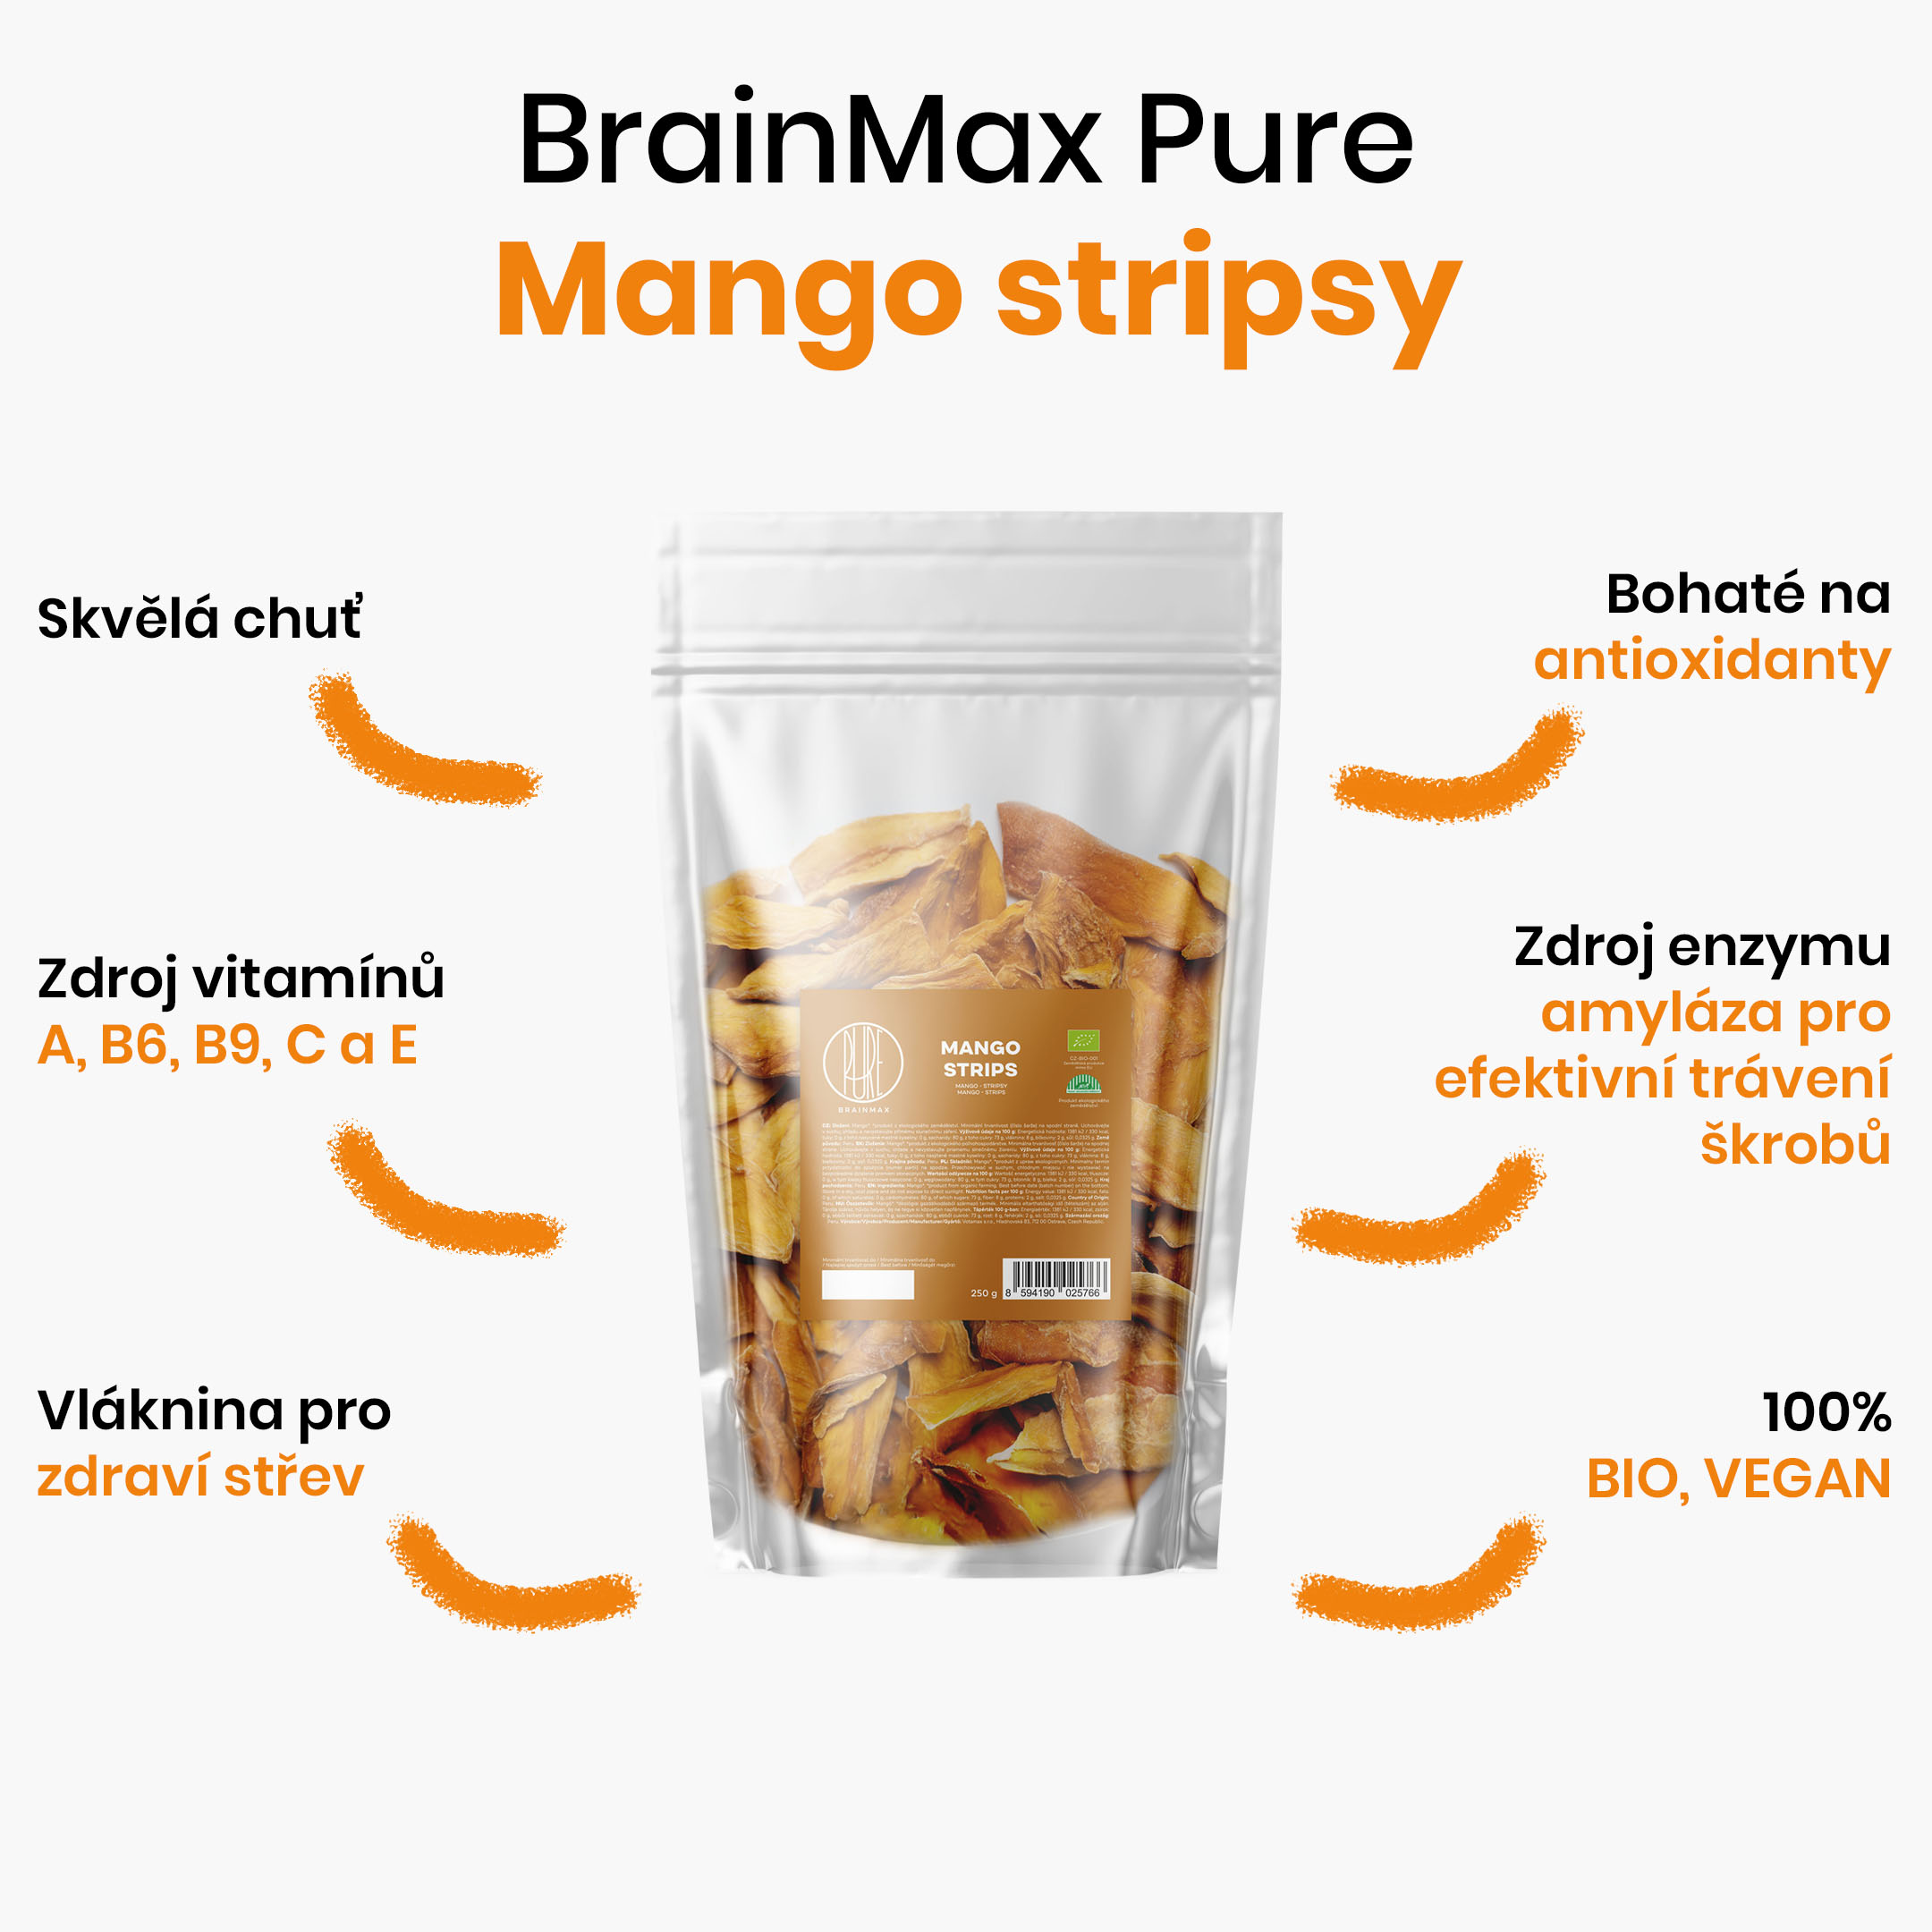 mango stripsy infografika